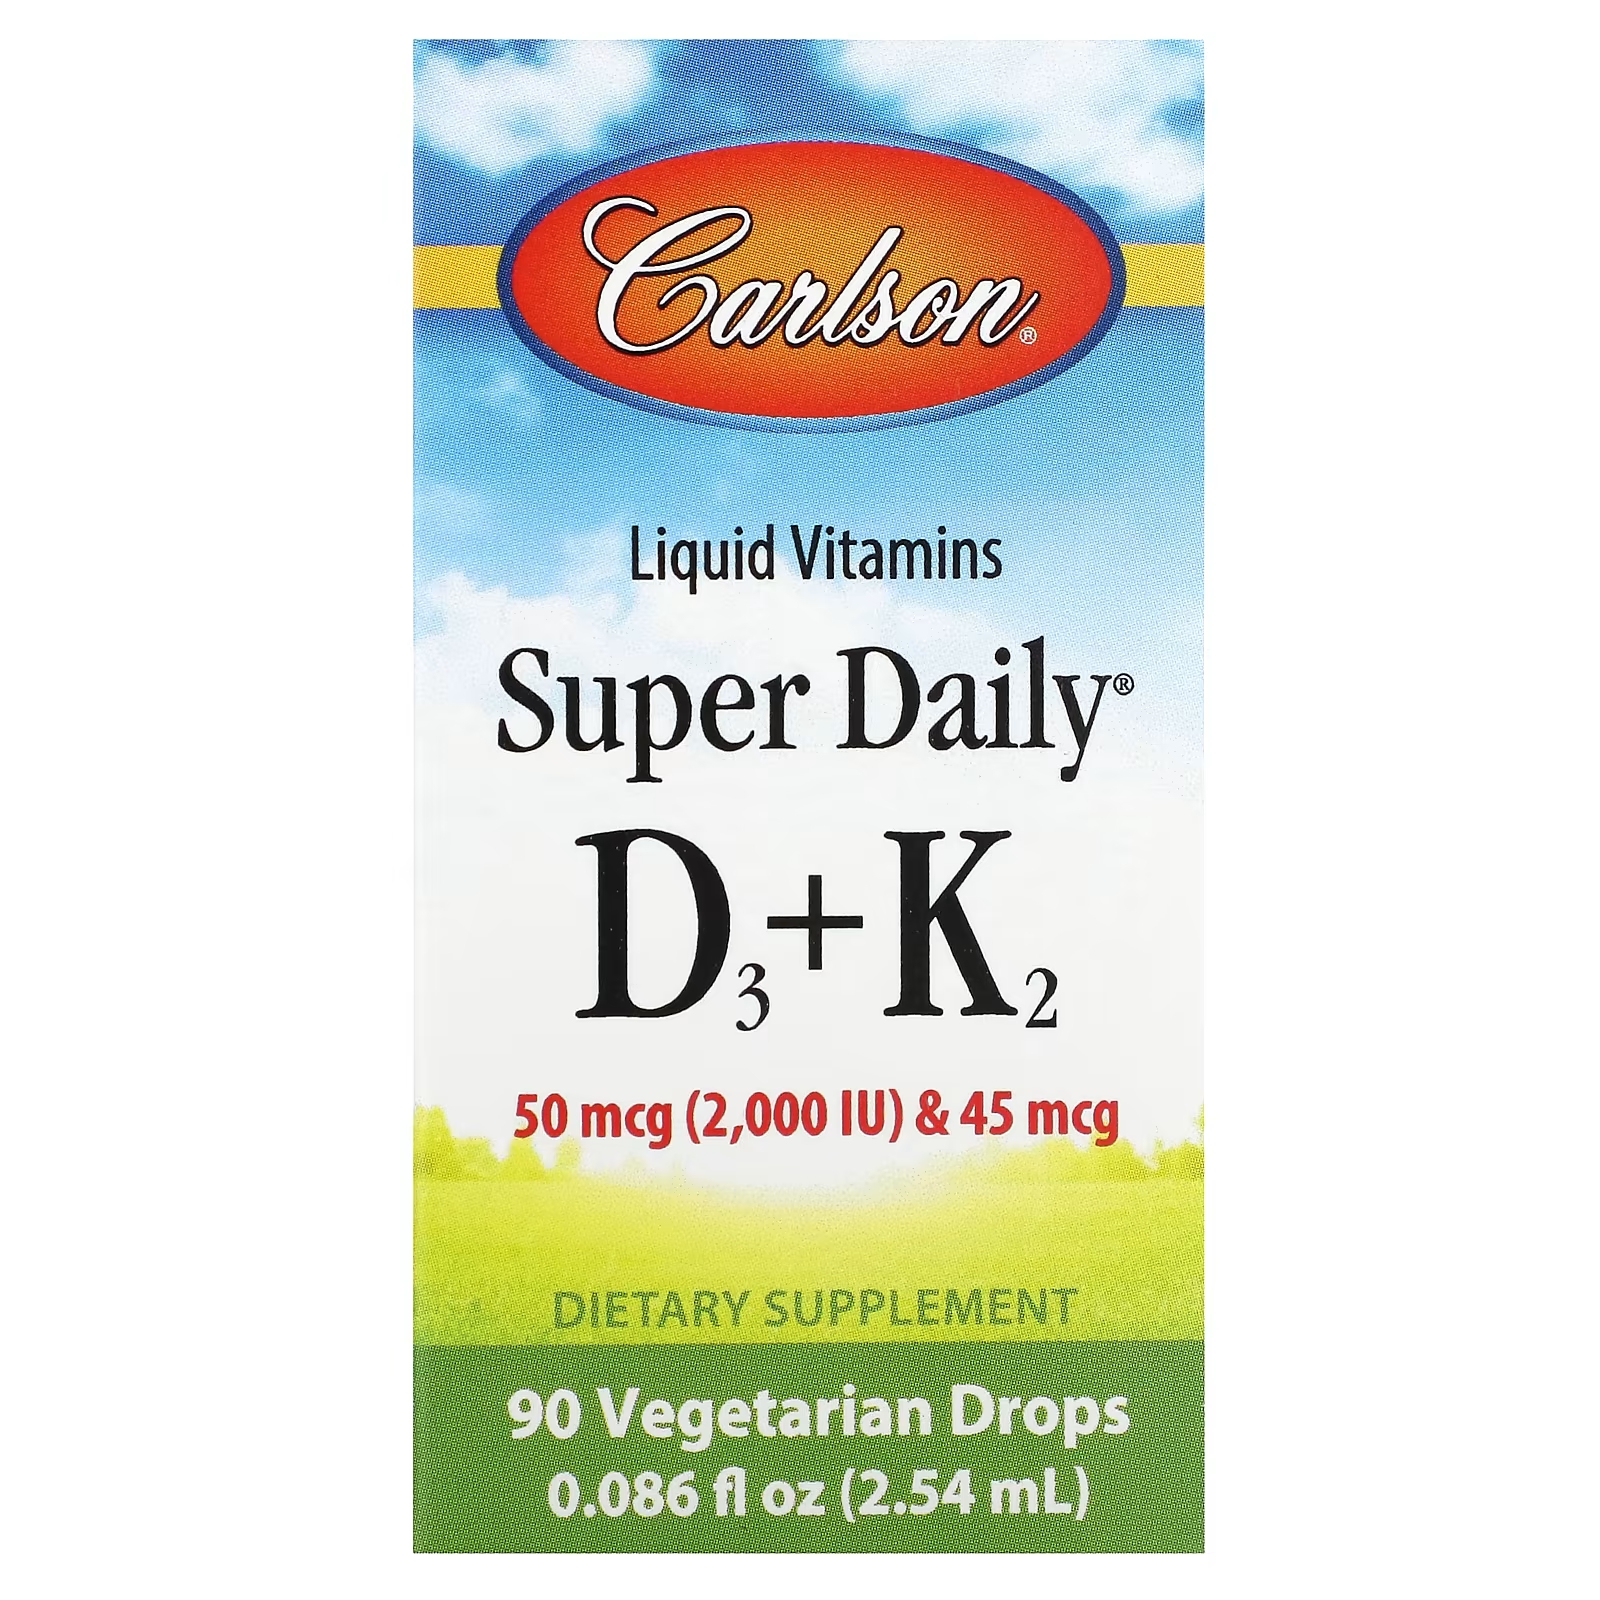 витамин в жидкой форме carlson super daily d3 k2 125 мкг и 90 мкг 90 растительных капель Витамины в жидкой форме Carlson Super Daily D3 + K2, 90 вегетарианских капель